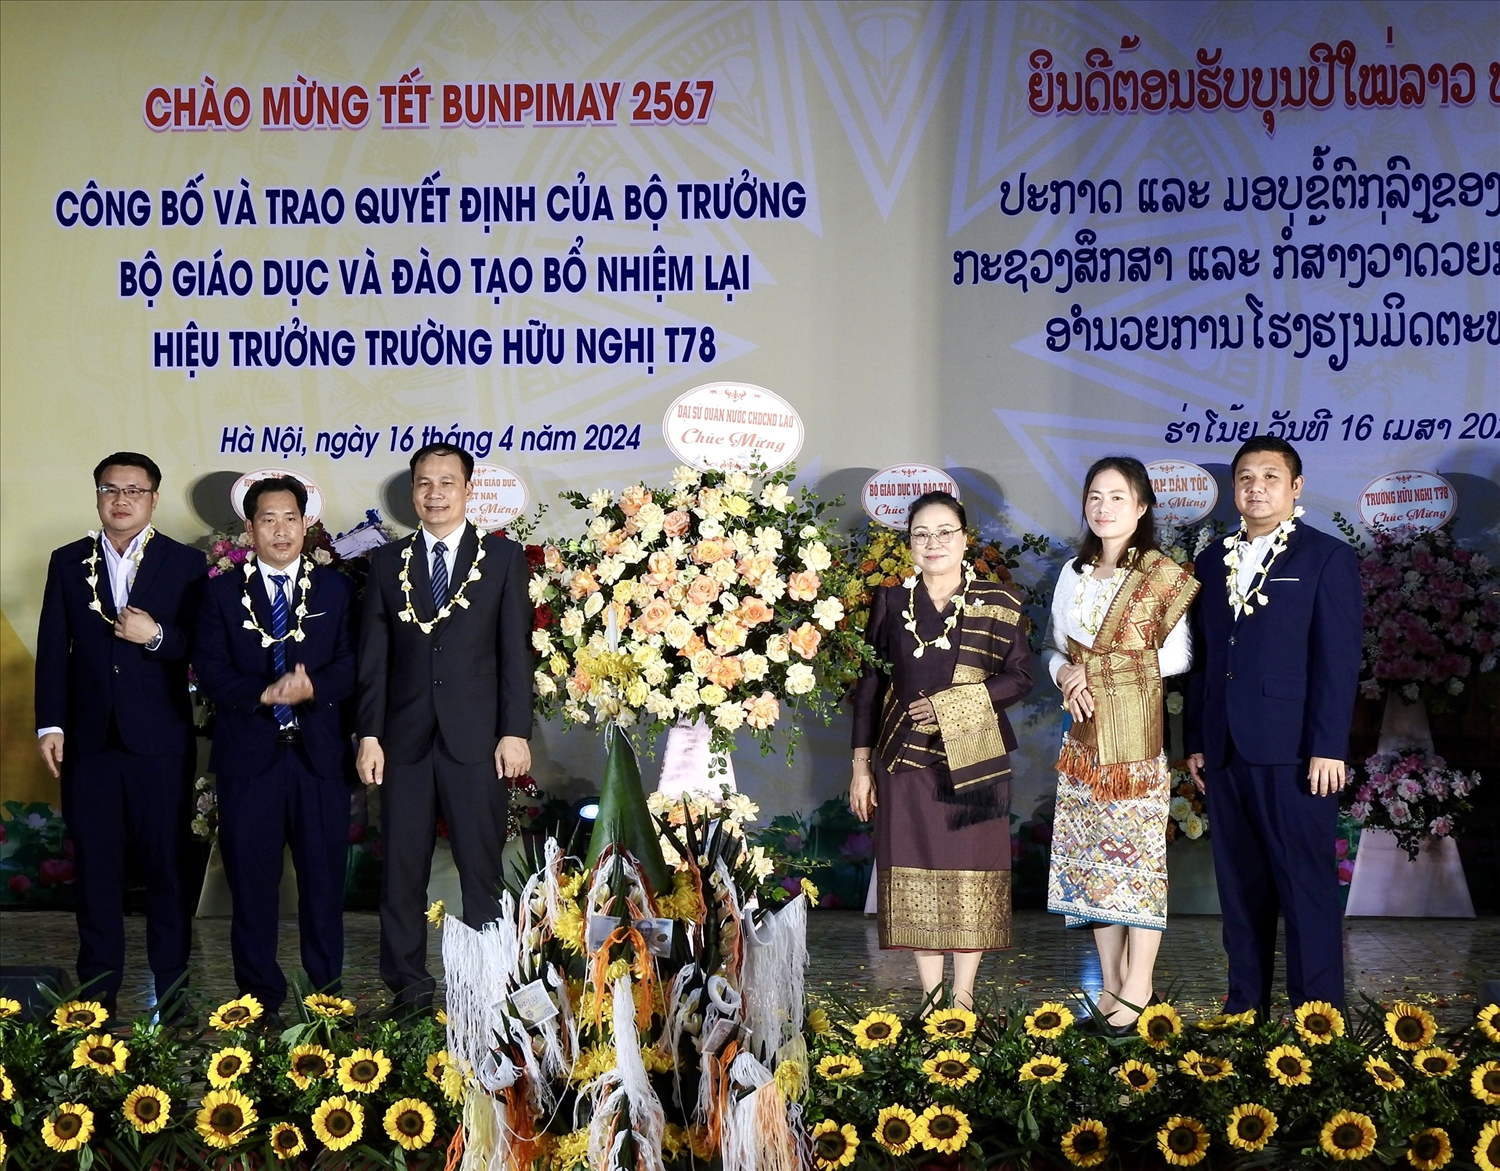 Đại sứ đặc mệnh toàn quyền nước CHDC Nhân dân Lào tại Việt Nam Khăm phâu Ân Thạ Văn tặng hoa chúc mừng tập thể giáo viên và học sinh Trường hữu nghị T78 nhân dịp Tết Bunpimay